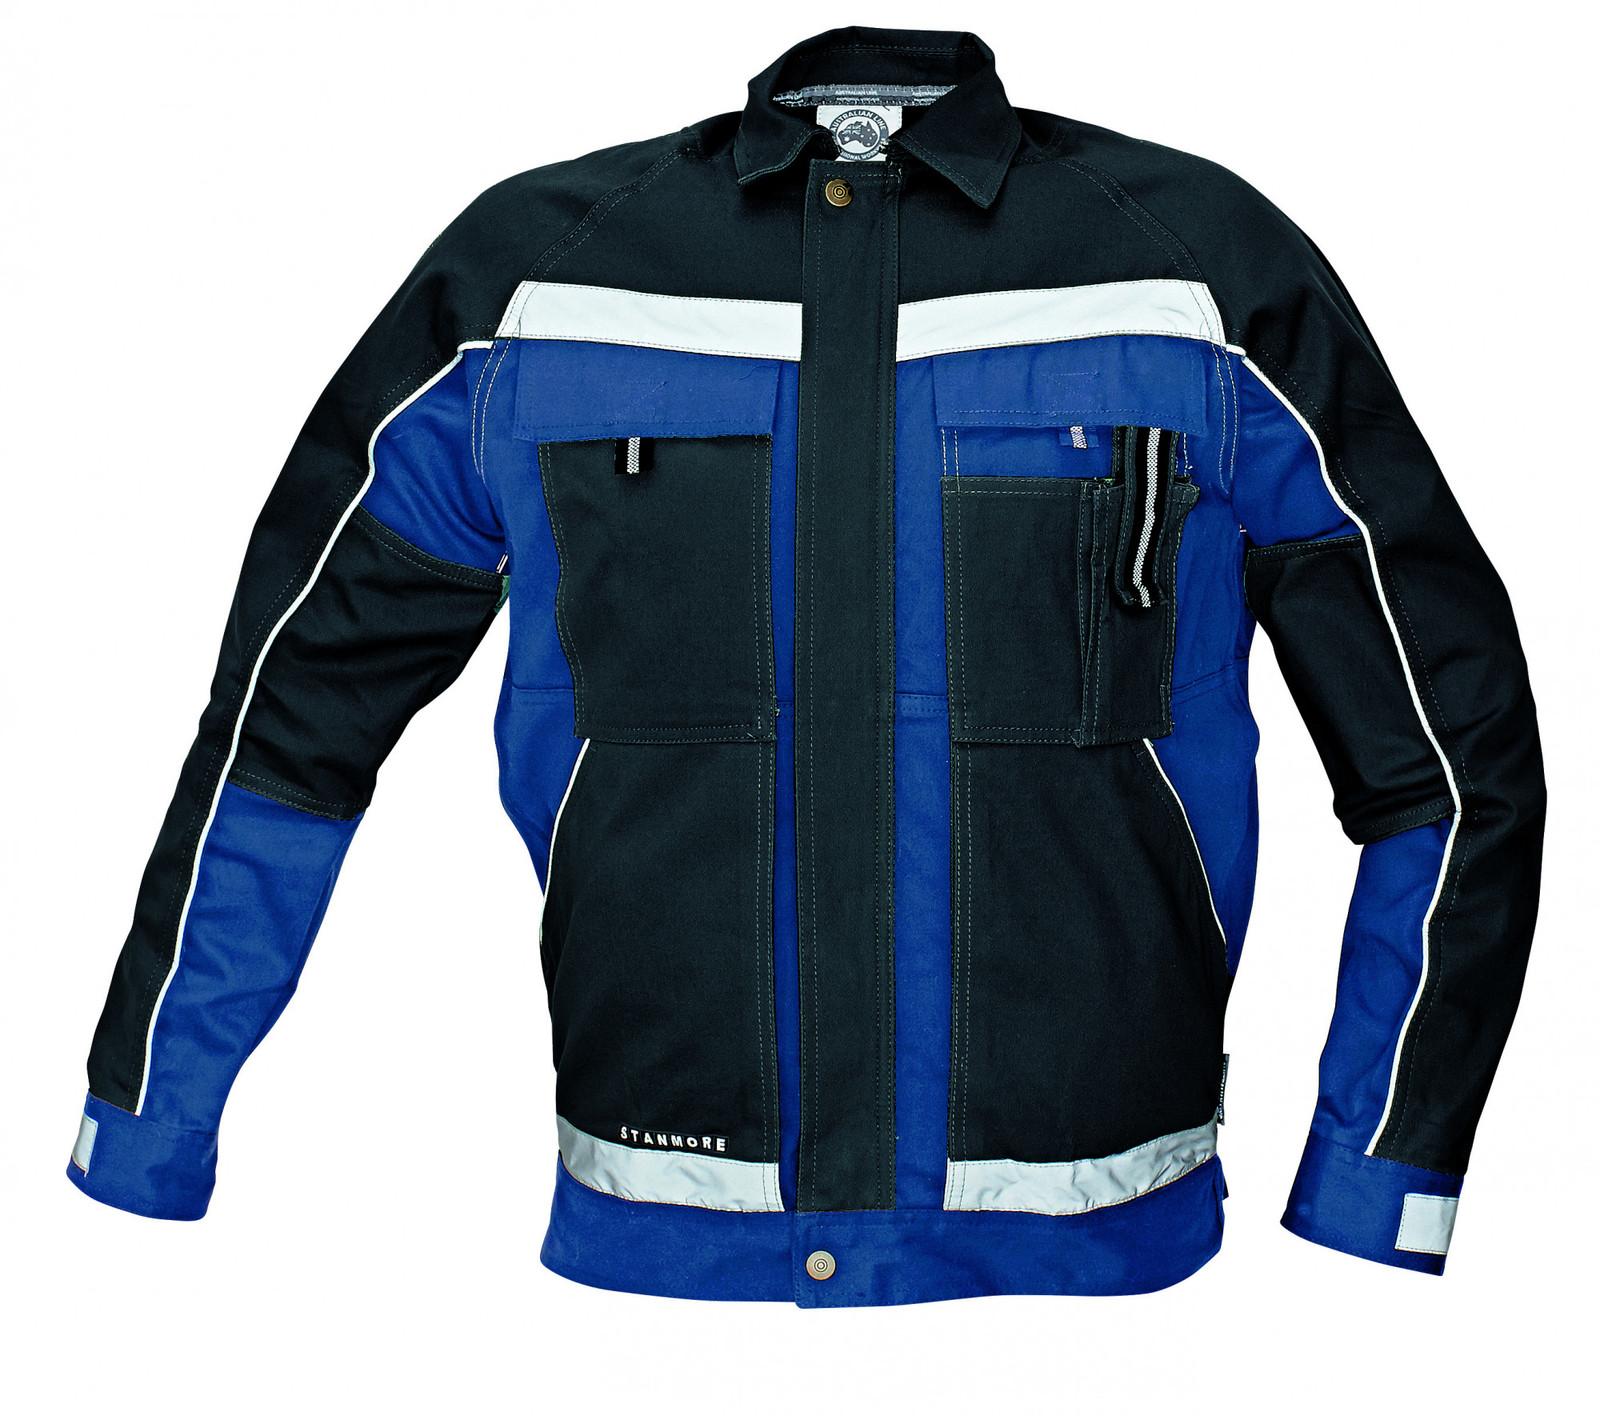 Bavlnená montérková bunda Stanmore - veľkosť: 64, farba: modrá